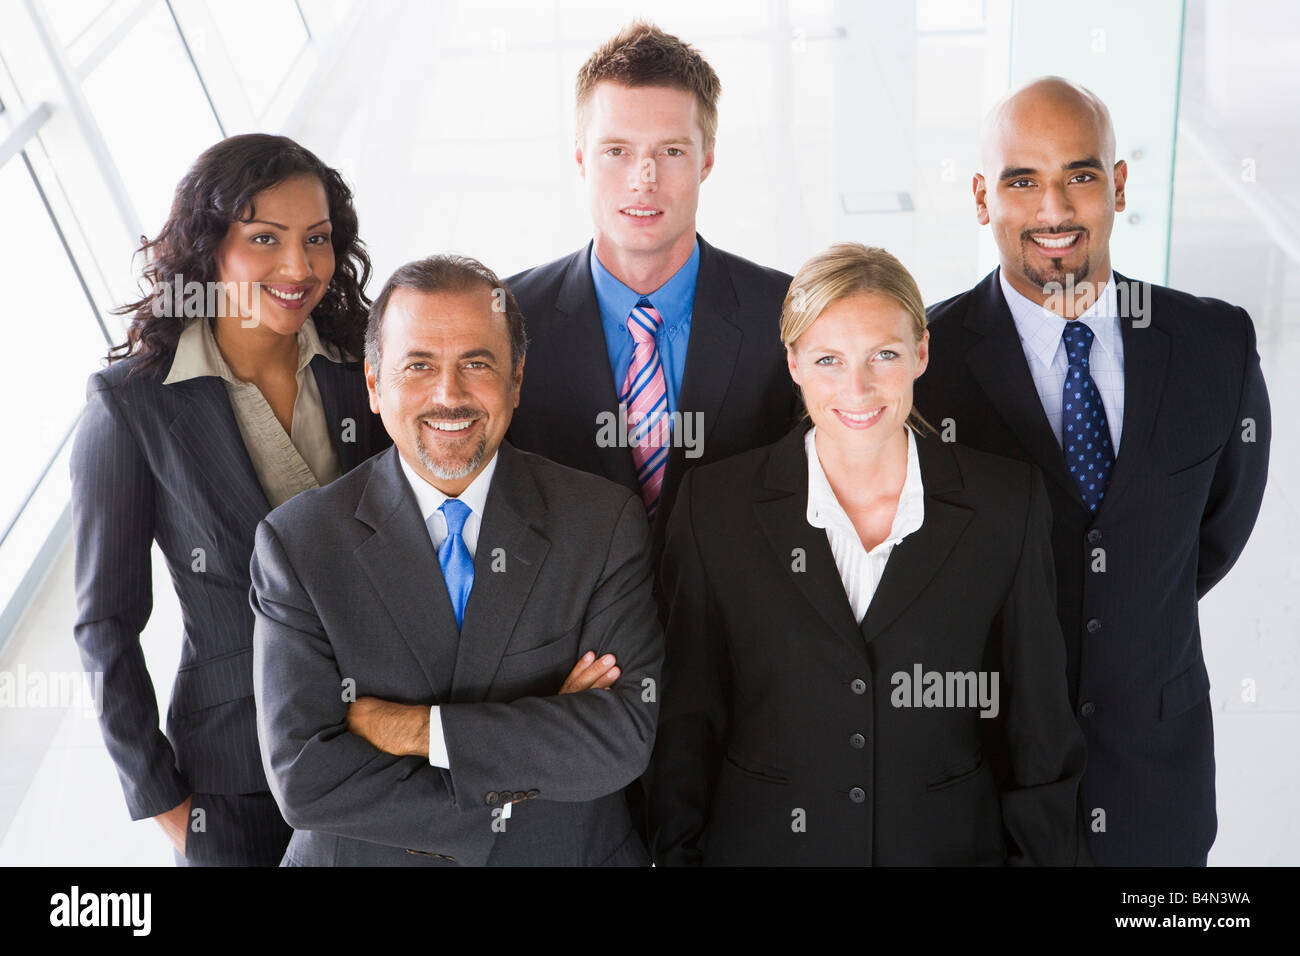 Gruppe von Mitarbeitern im Büro/Praxisflächen lächelnd (high-Key) Stockfoto